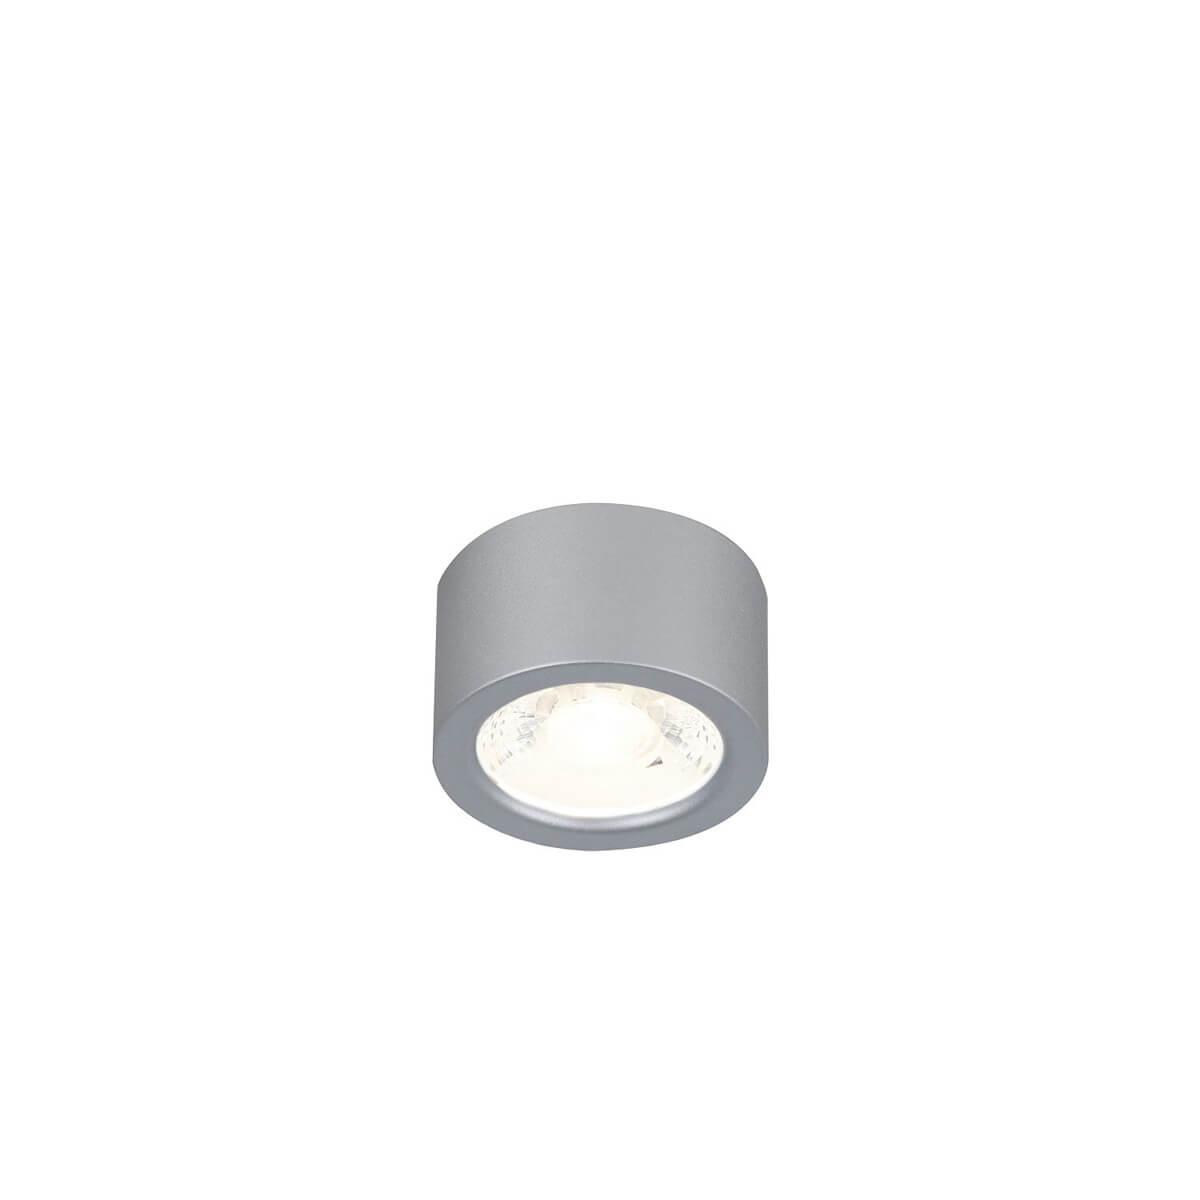 Потолочный светодиодный светильник Favourite Deorsum 2808-1U потолочный светильник deorsum led 7вт